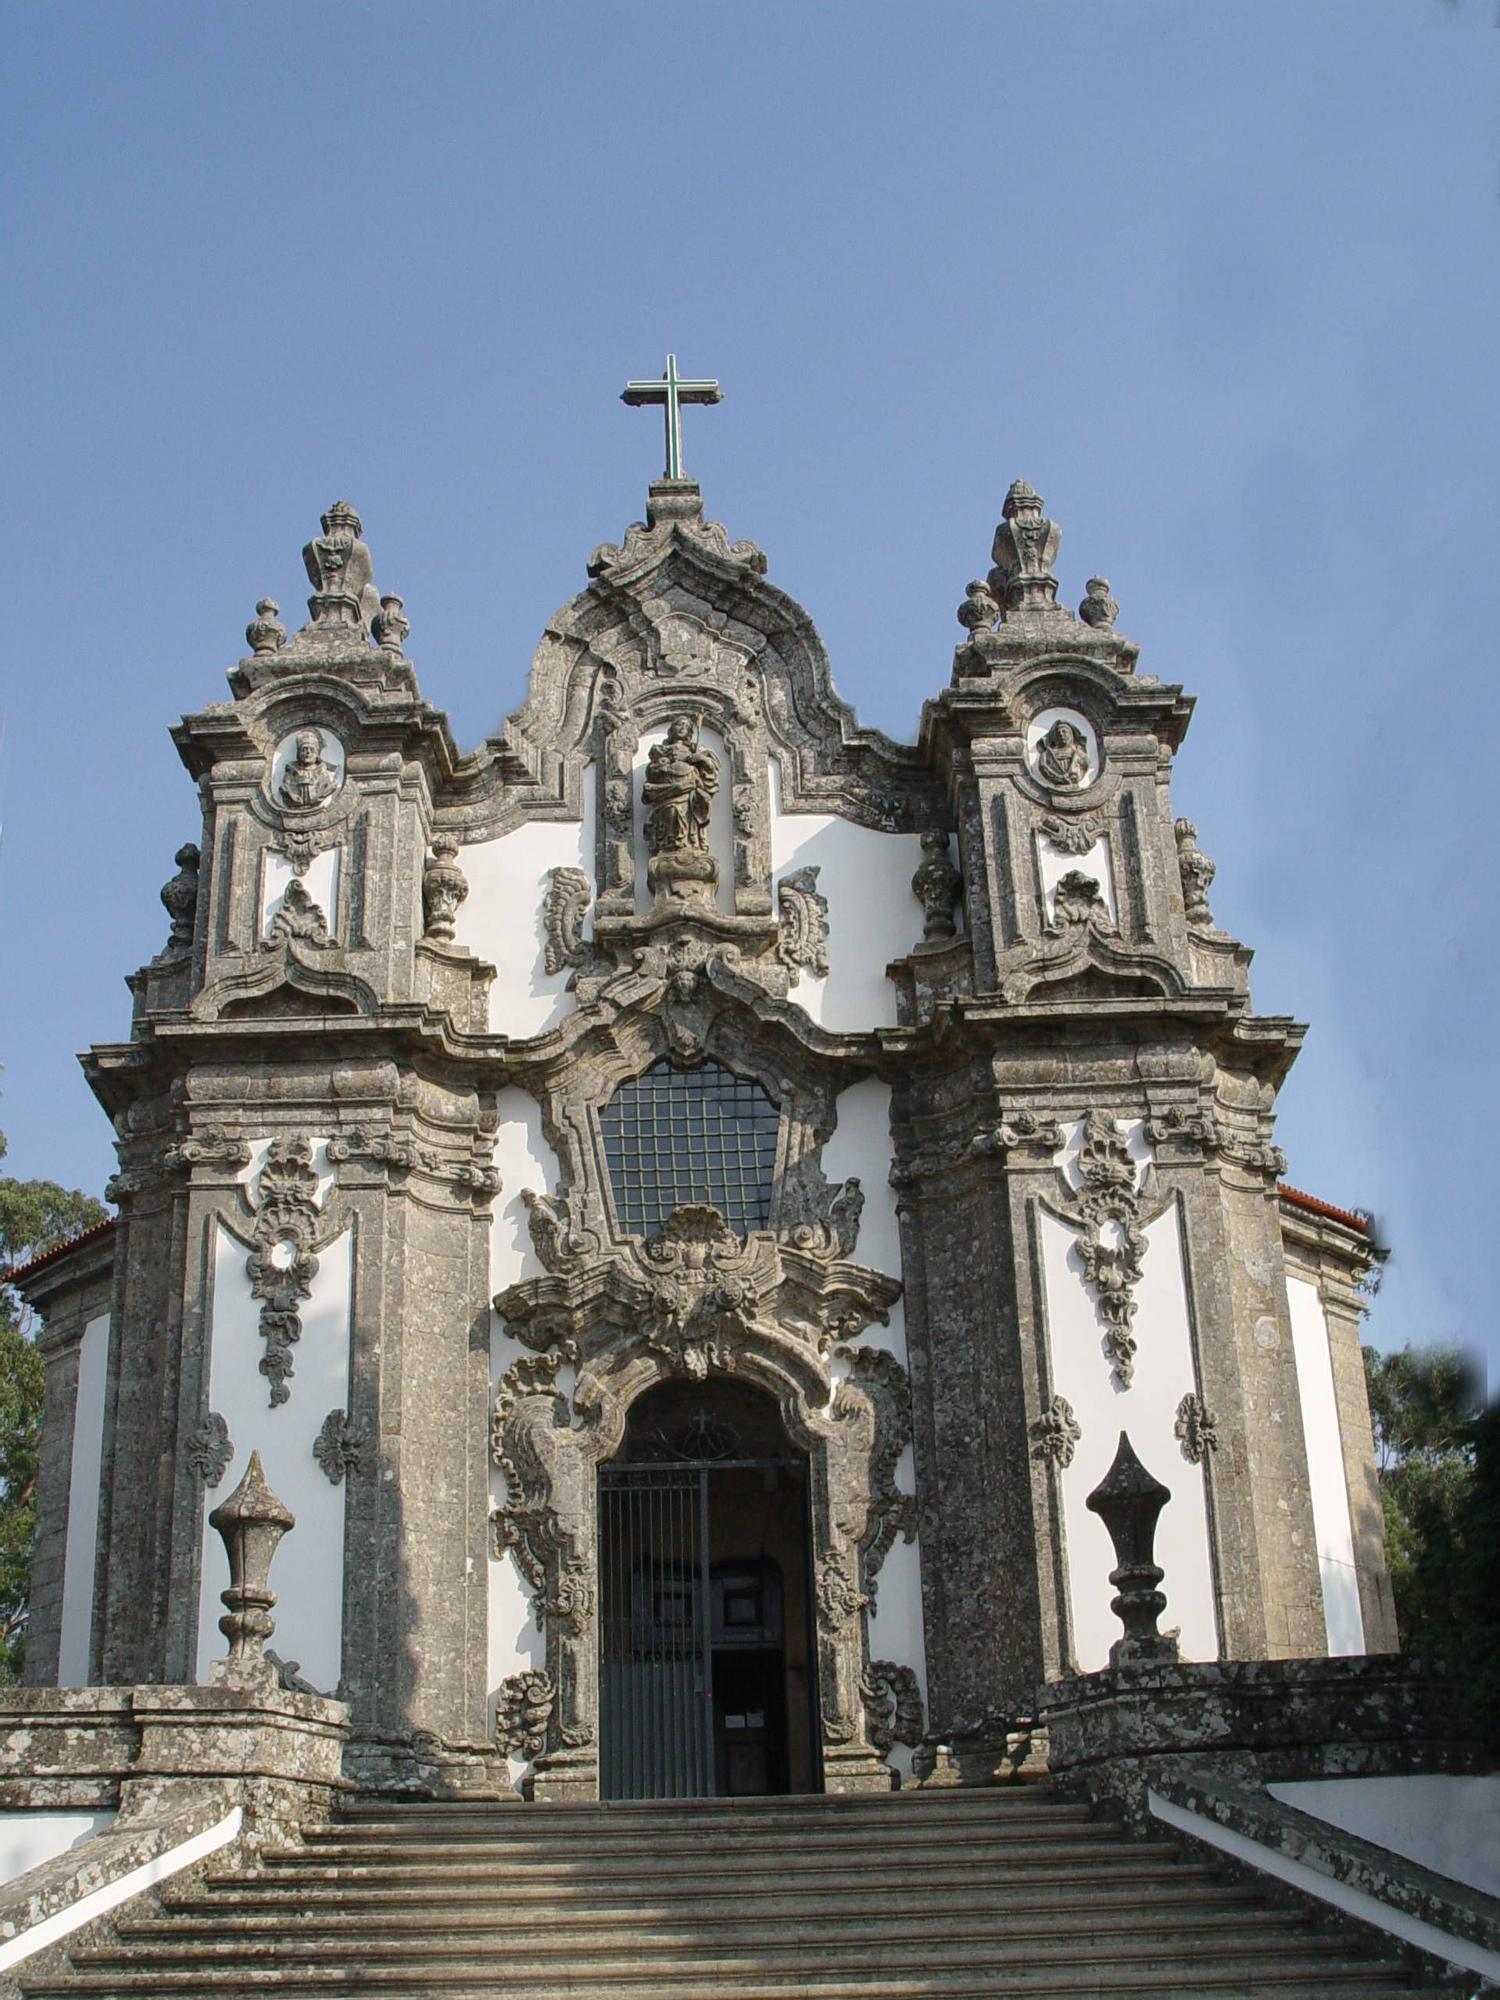 Igreja de Santa Maria Madalena